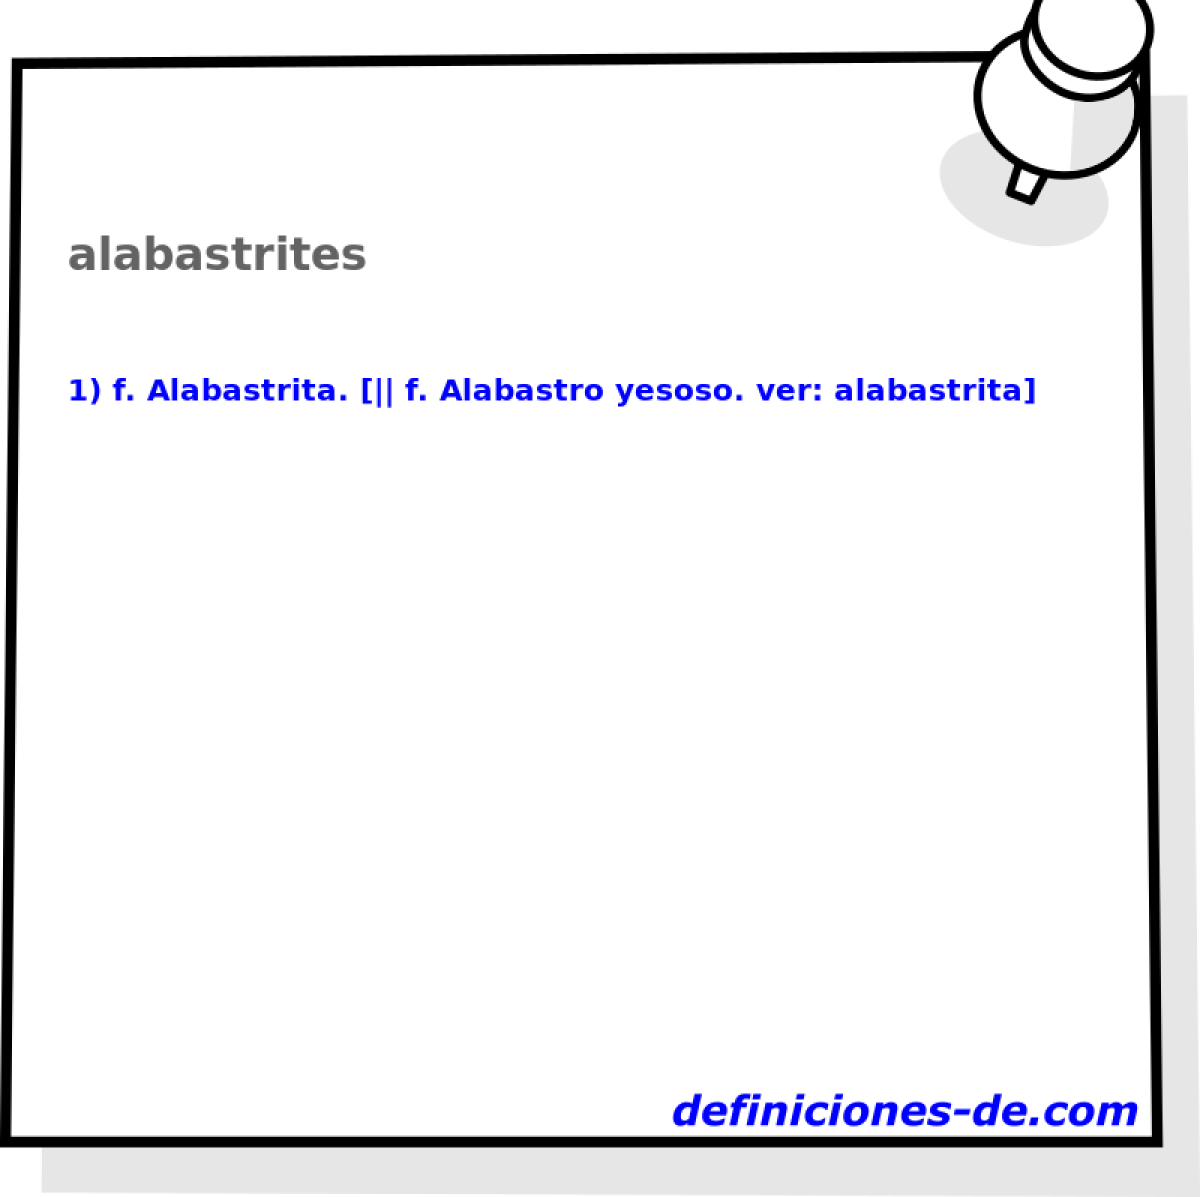 alabastrites 